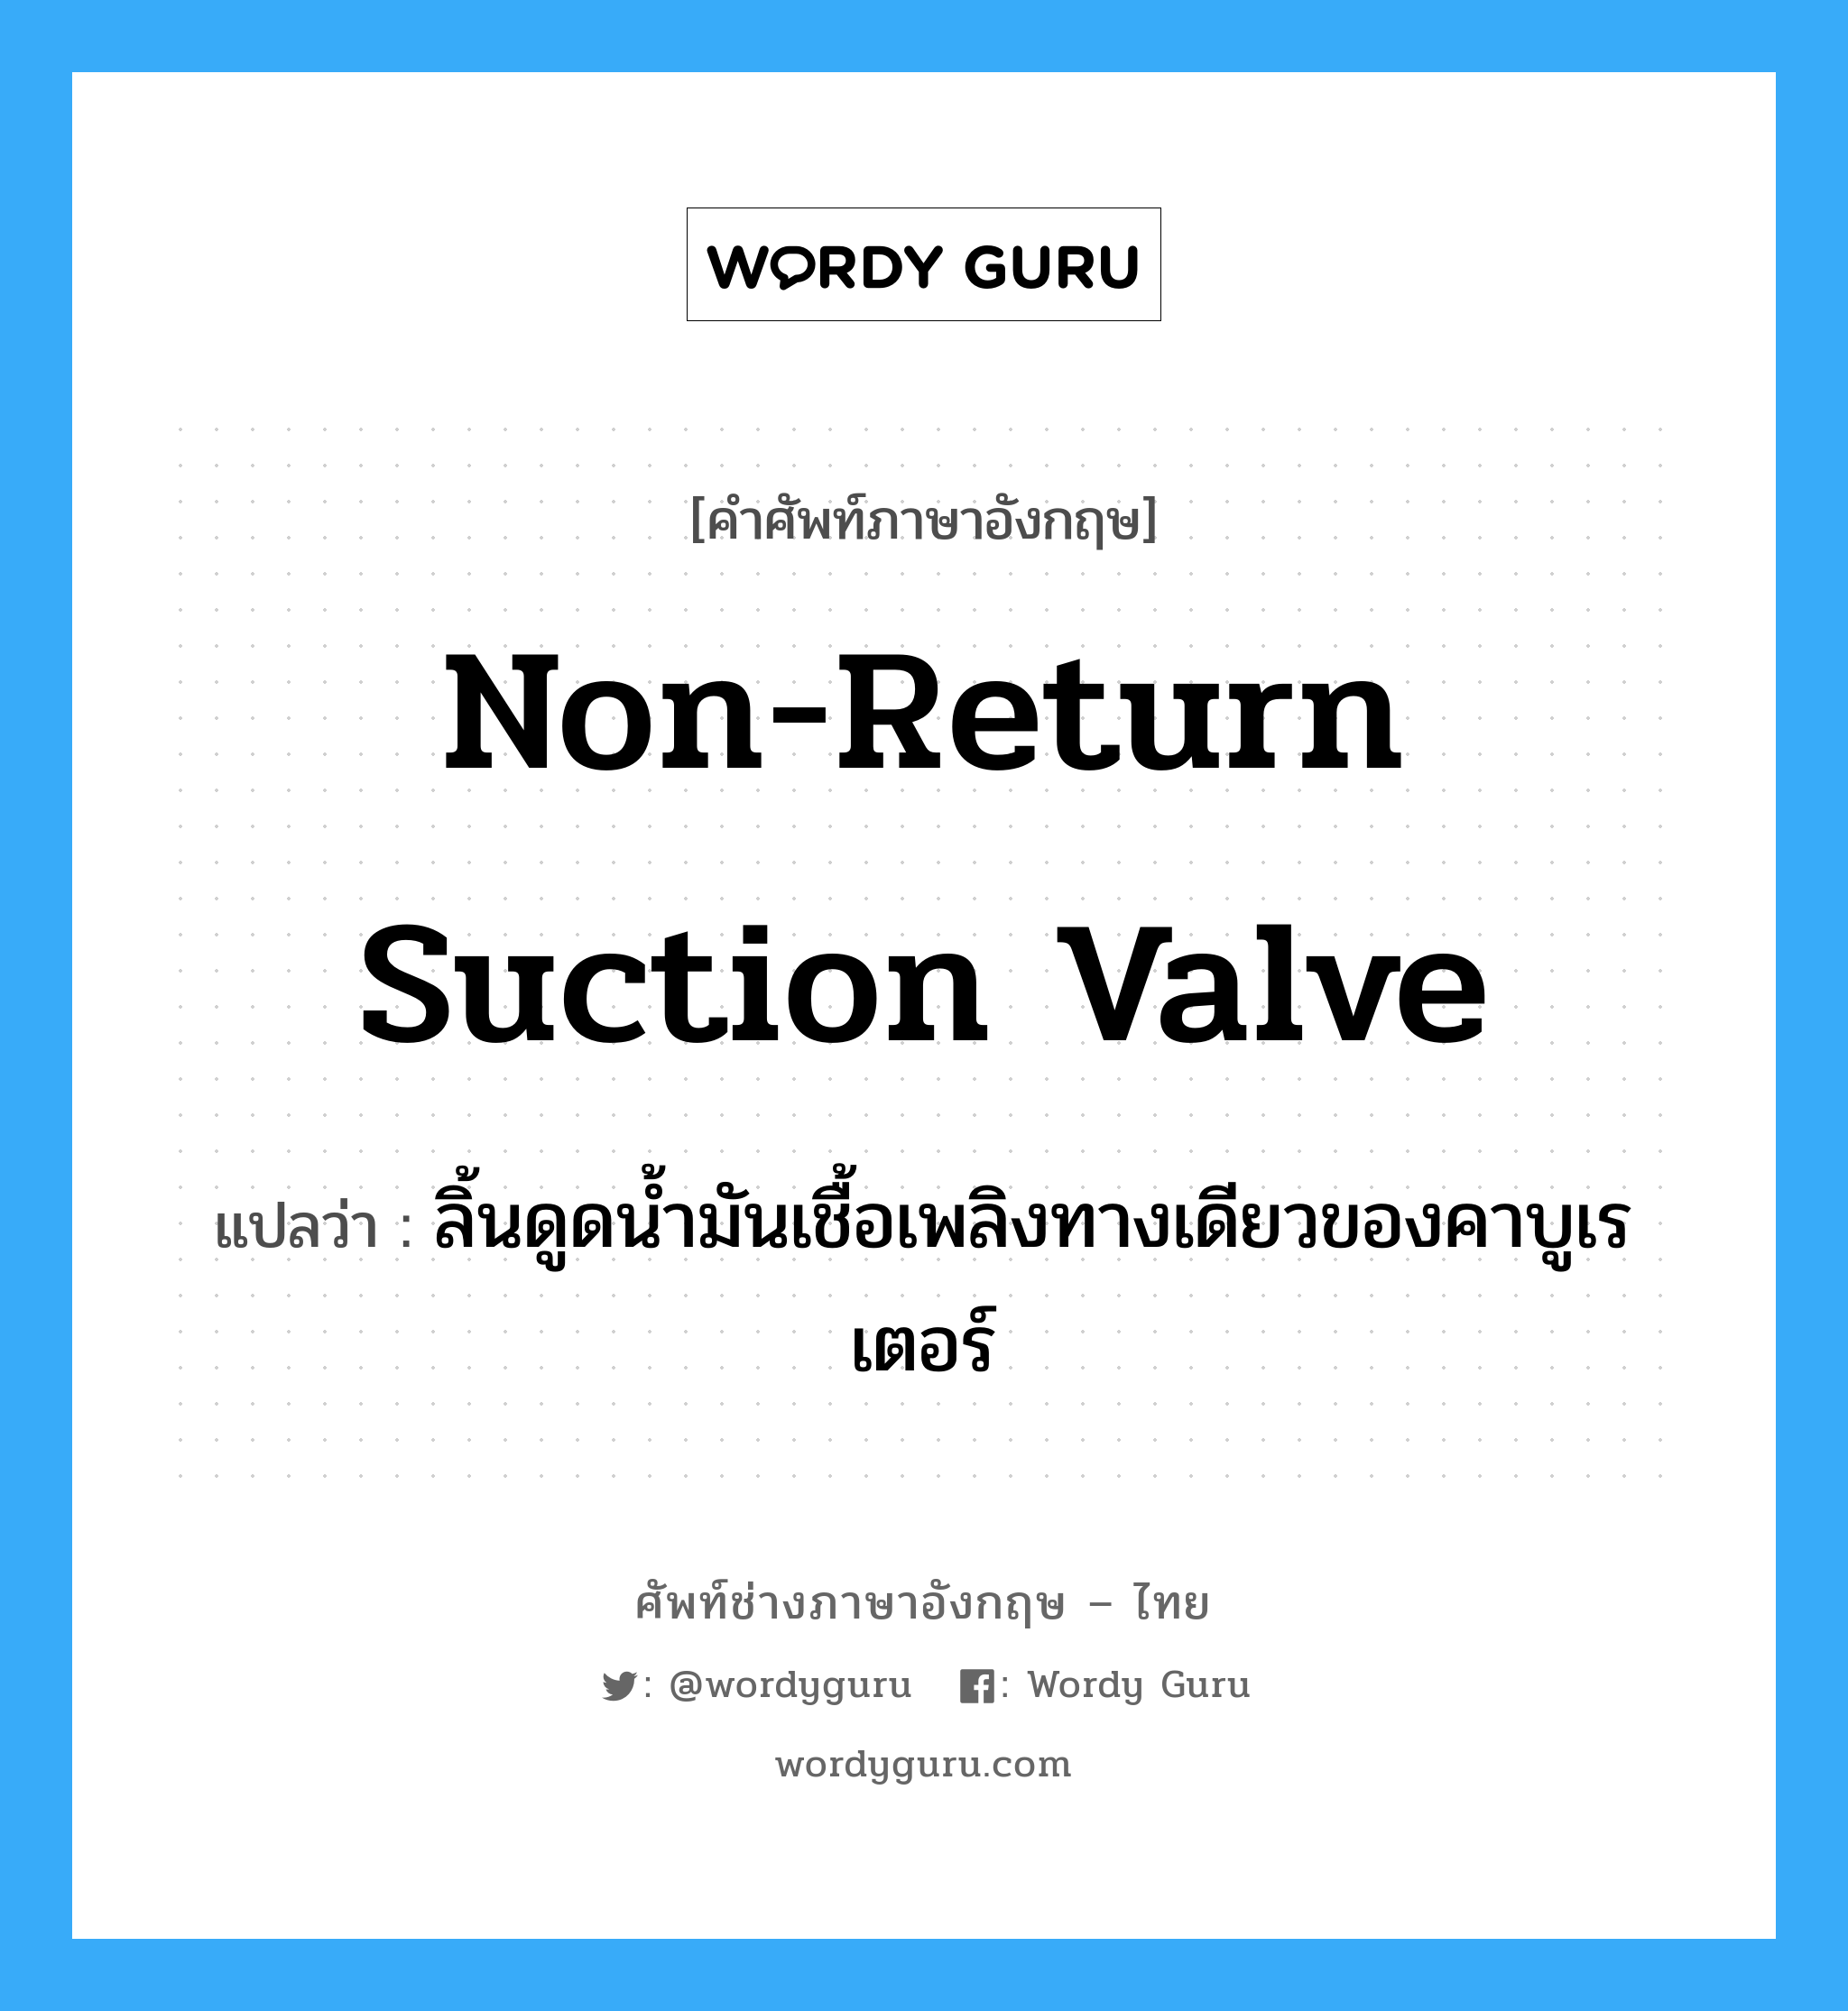 non-return suction valve แปลว่า?, คำศัพท์ช่างภาษาอังกฤษ - ไทย non-return suction valve คำศัพท์ภาษาอังกฤษ non-return suction valve แปลว่า ลิ้นดูดน้ำมันเชื้อเพลิงทางเดียวของคาบูเรเตอร์